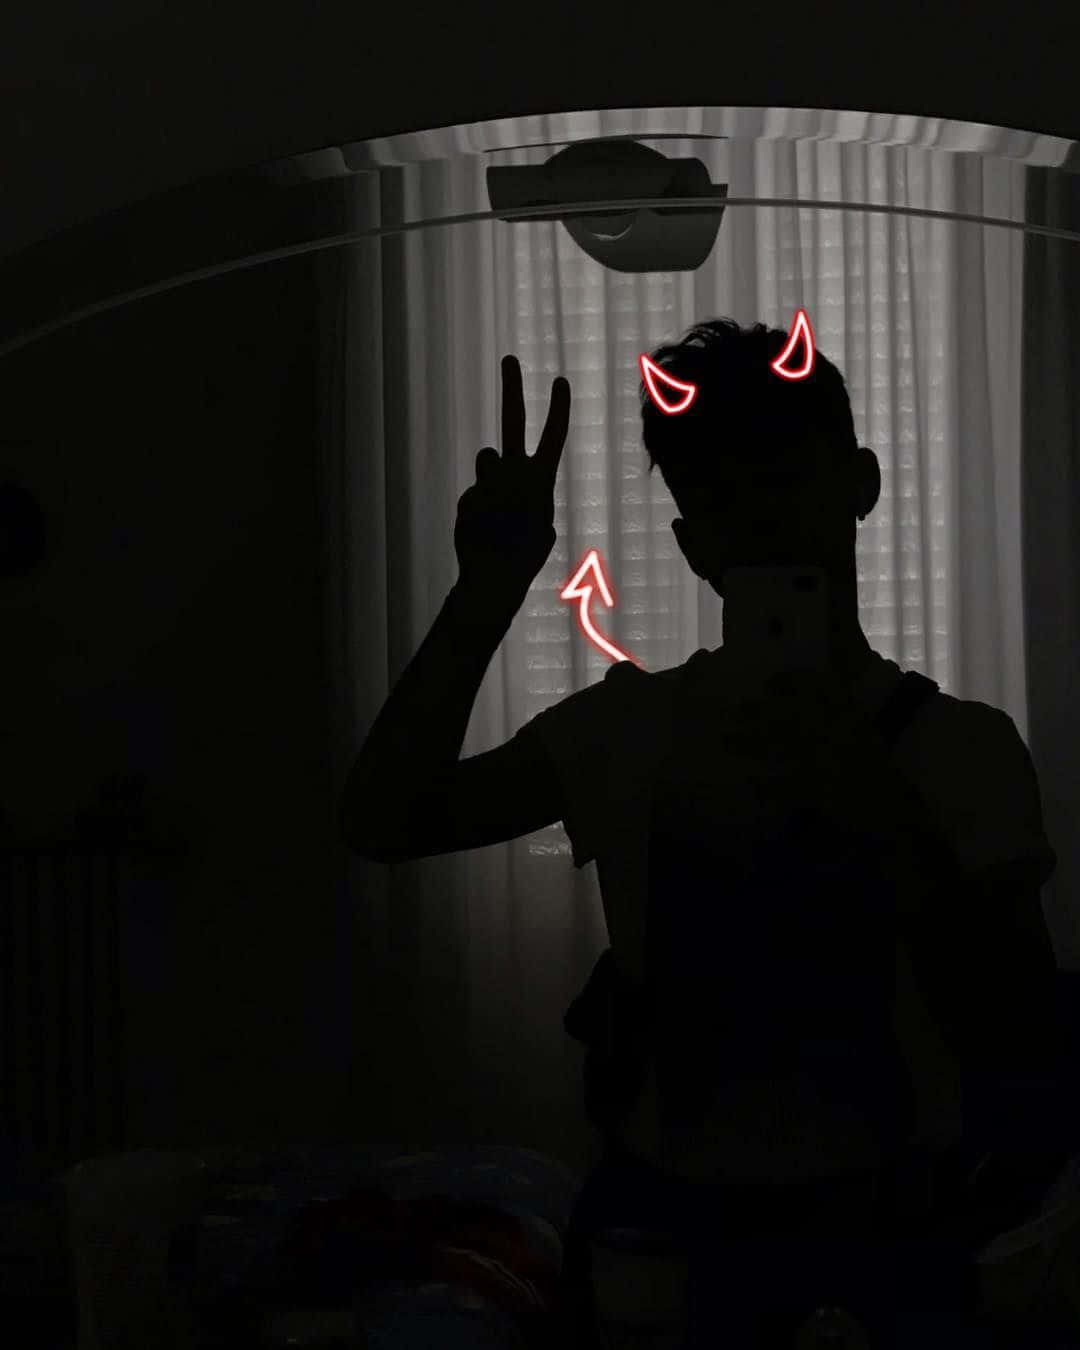 Aesthetic Instagram Devil Man Silhouette